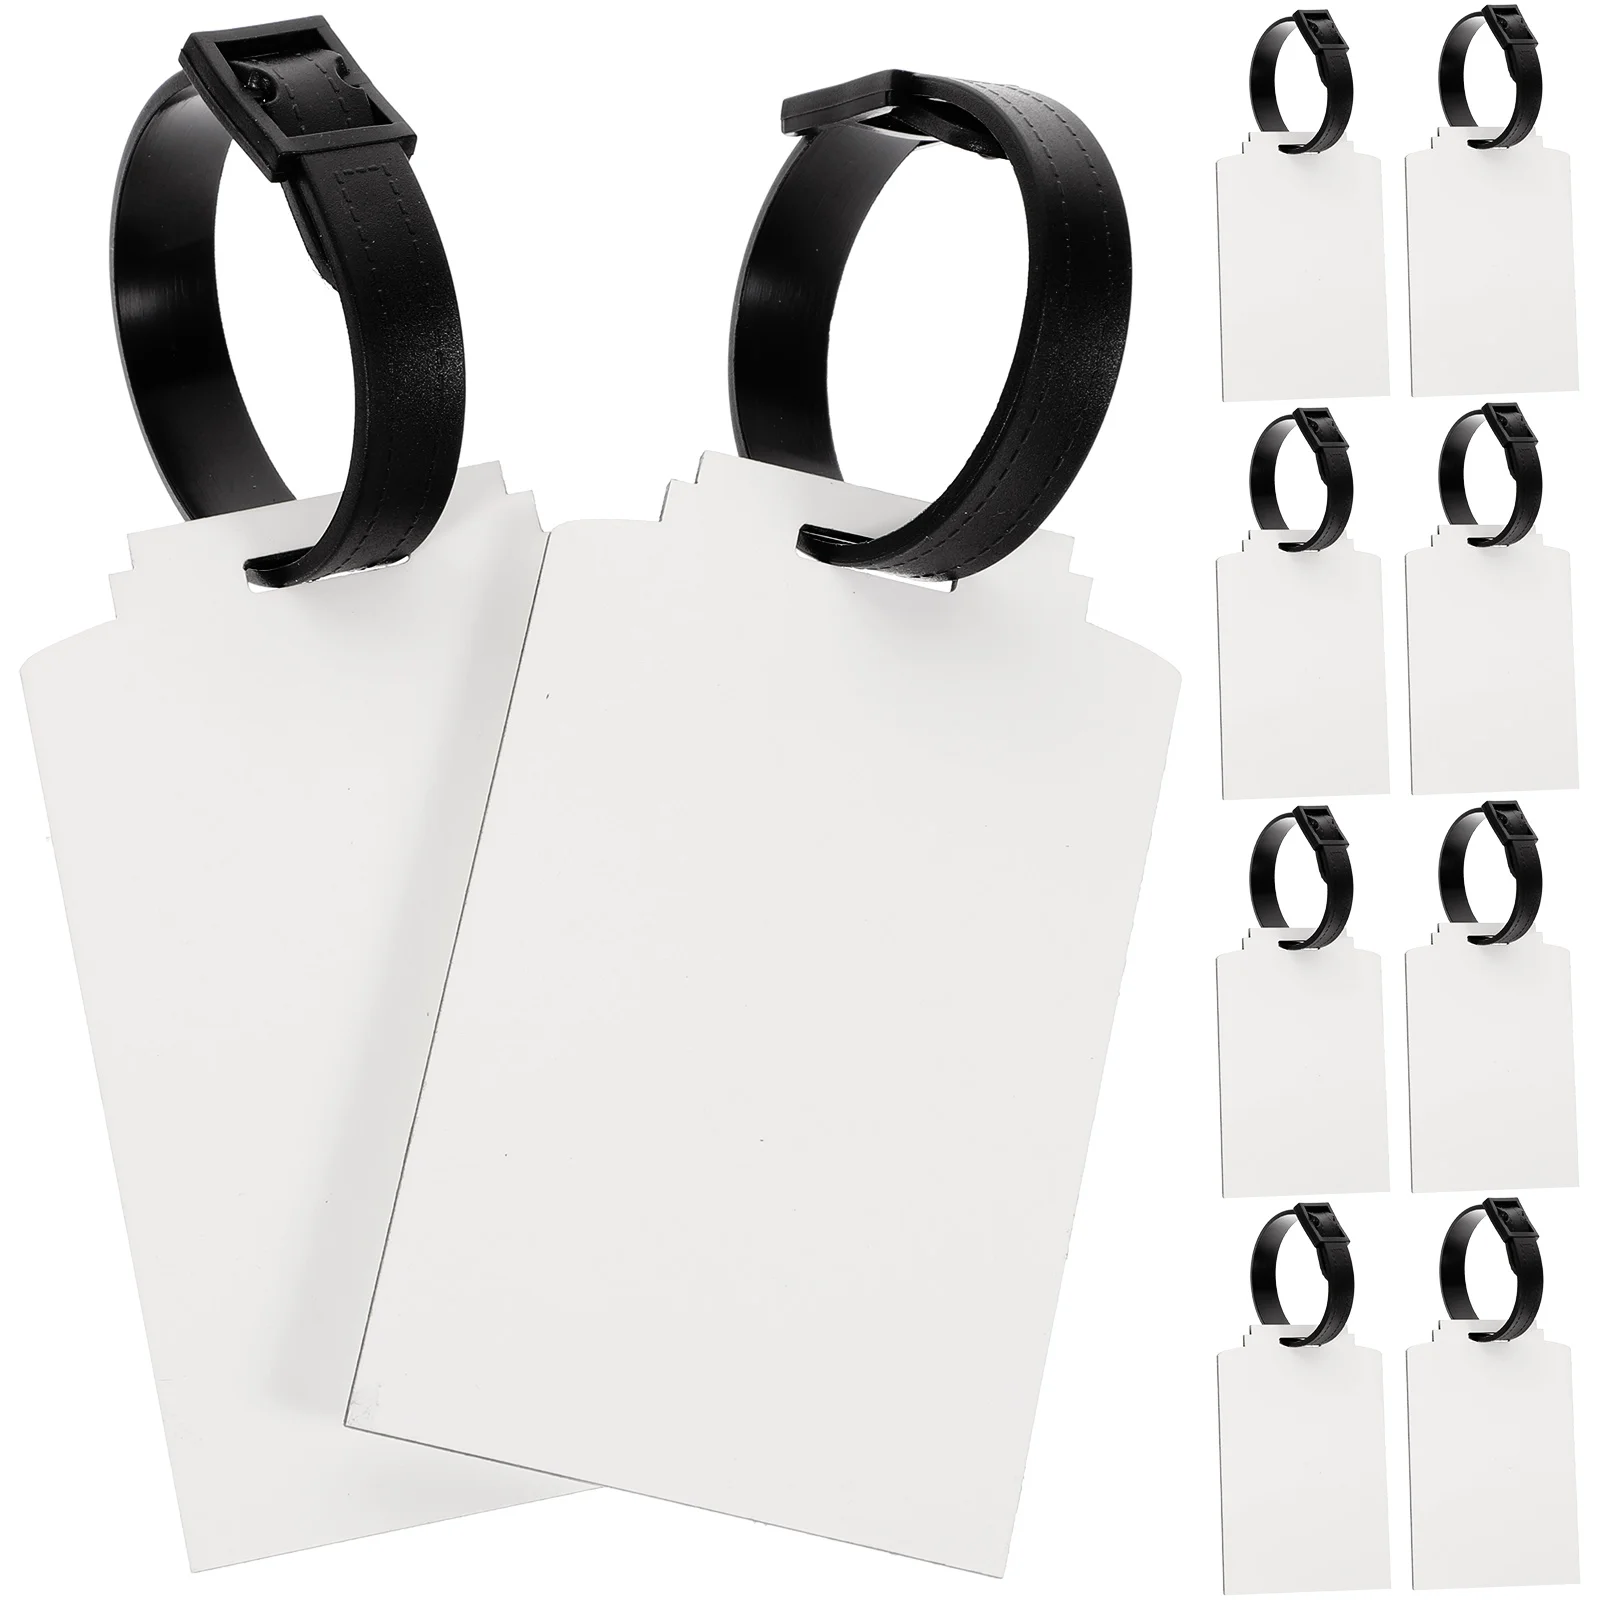 

10 шт. пустые ярлыки для сумок, акриловые ярлыки для багажа, белые ярлыки оптом, ярлыки для сублимационной косметики, ярлыки для багажа, дорожные ярлыки